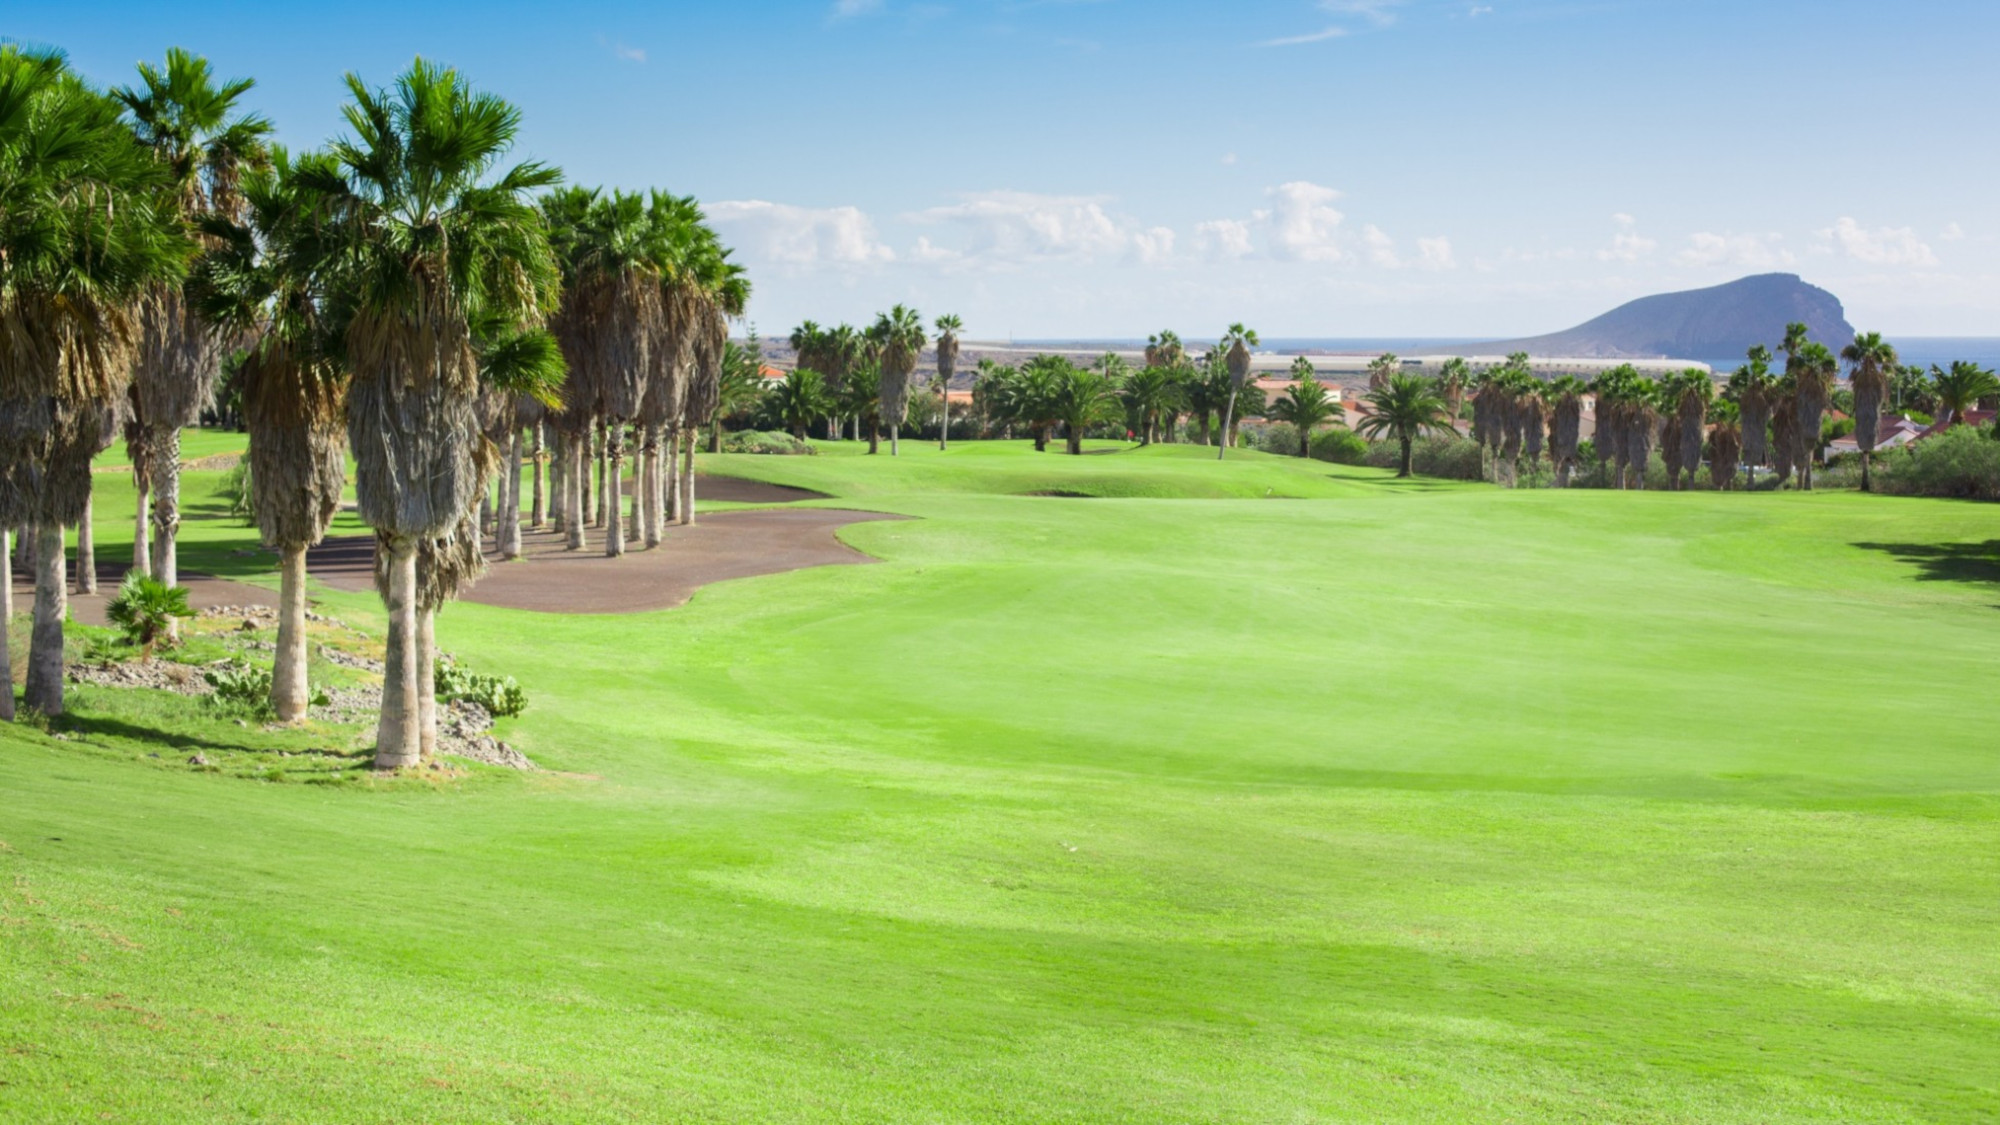  golf-del-sur-Tenerife